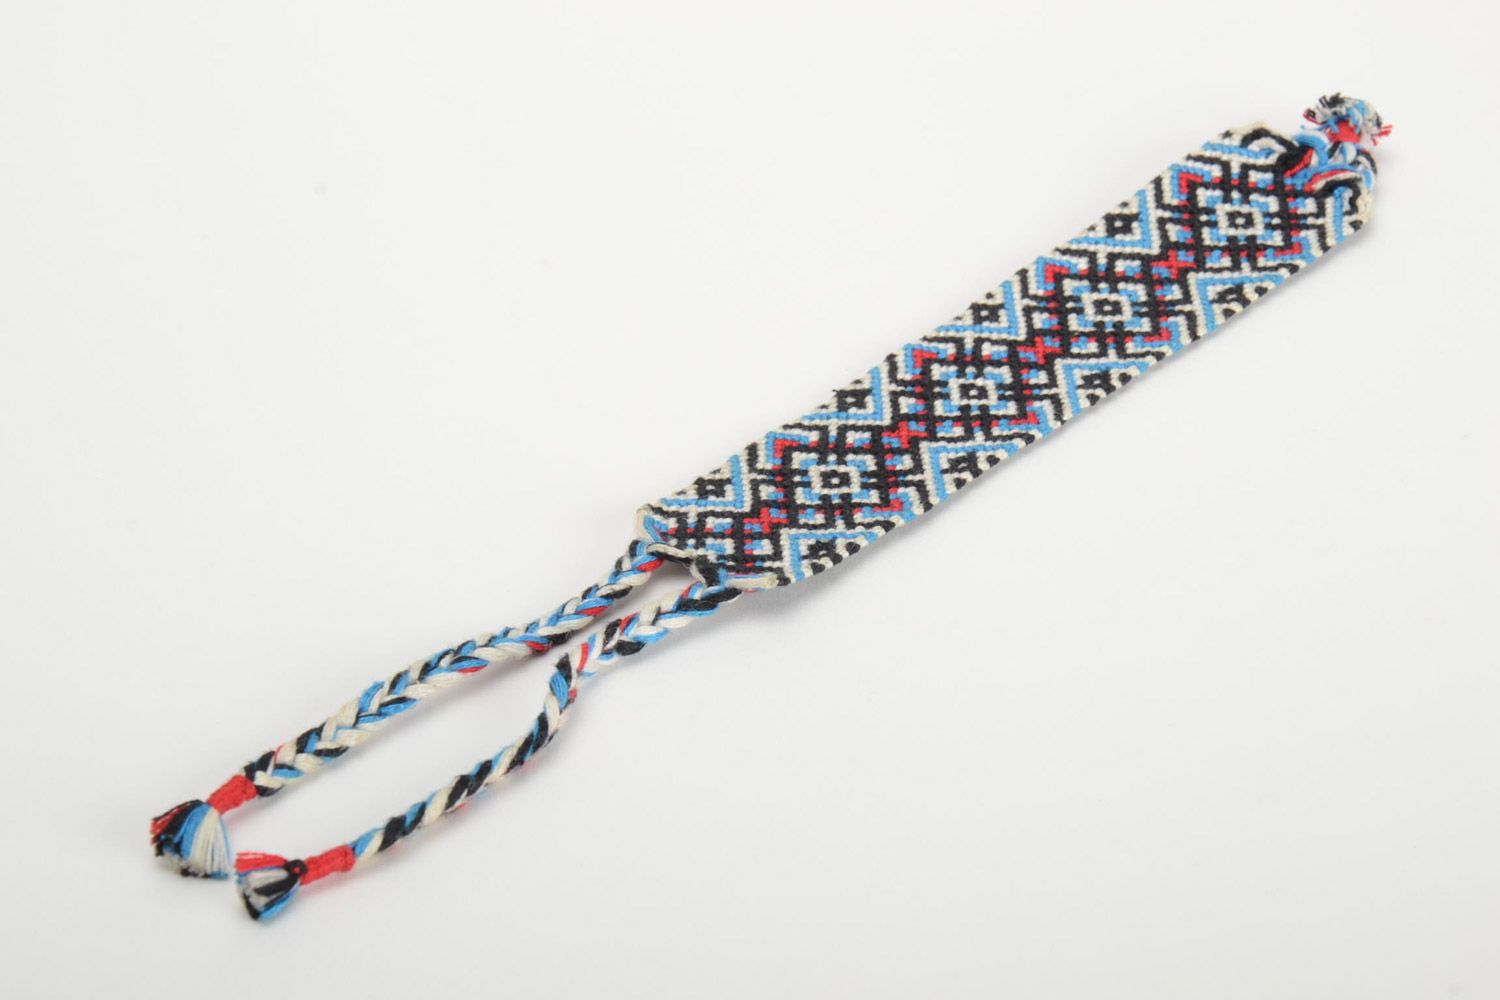 Плетеный браслет из ниток разноцветный с орнаментом стильный широкий хенд мэйд фото 2